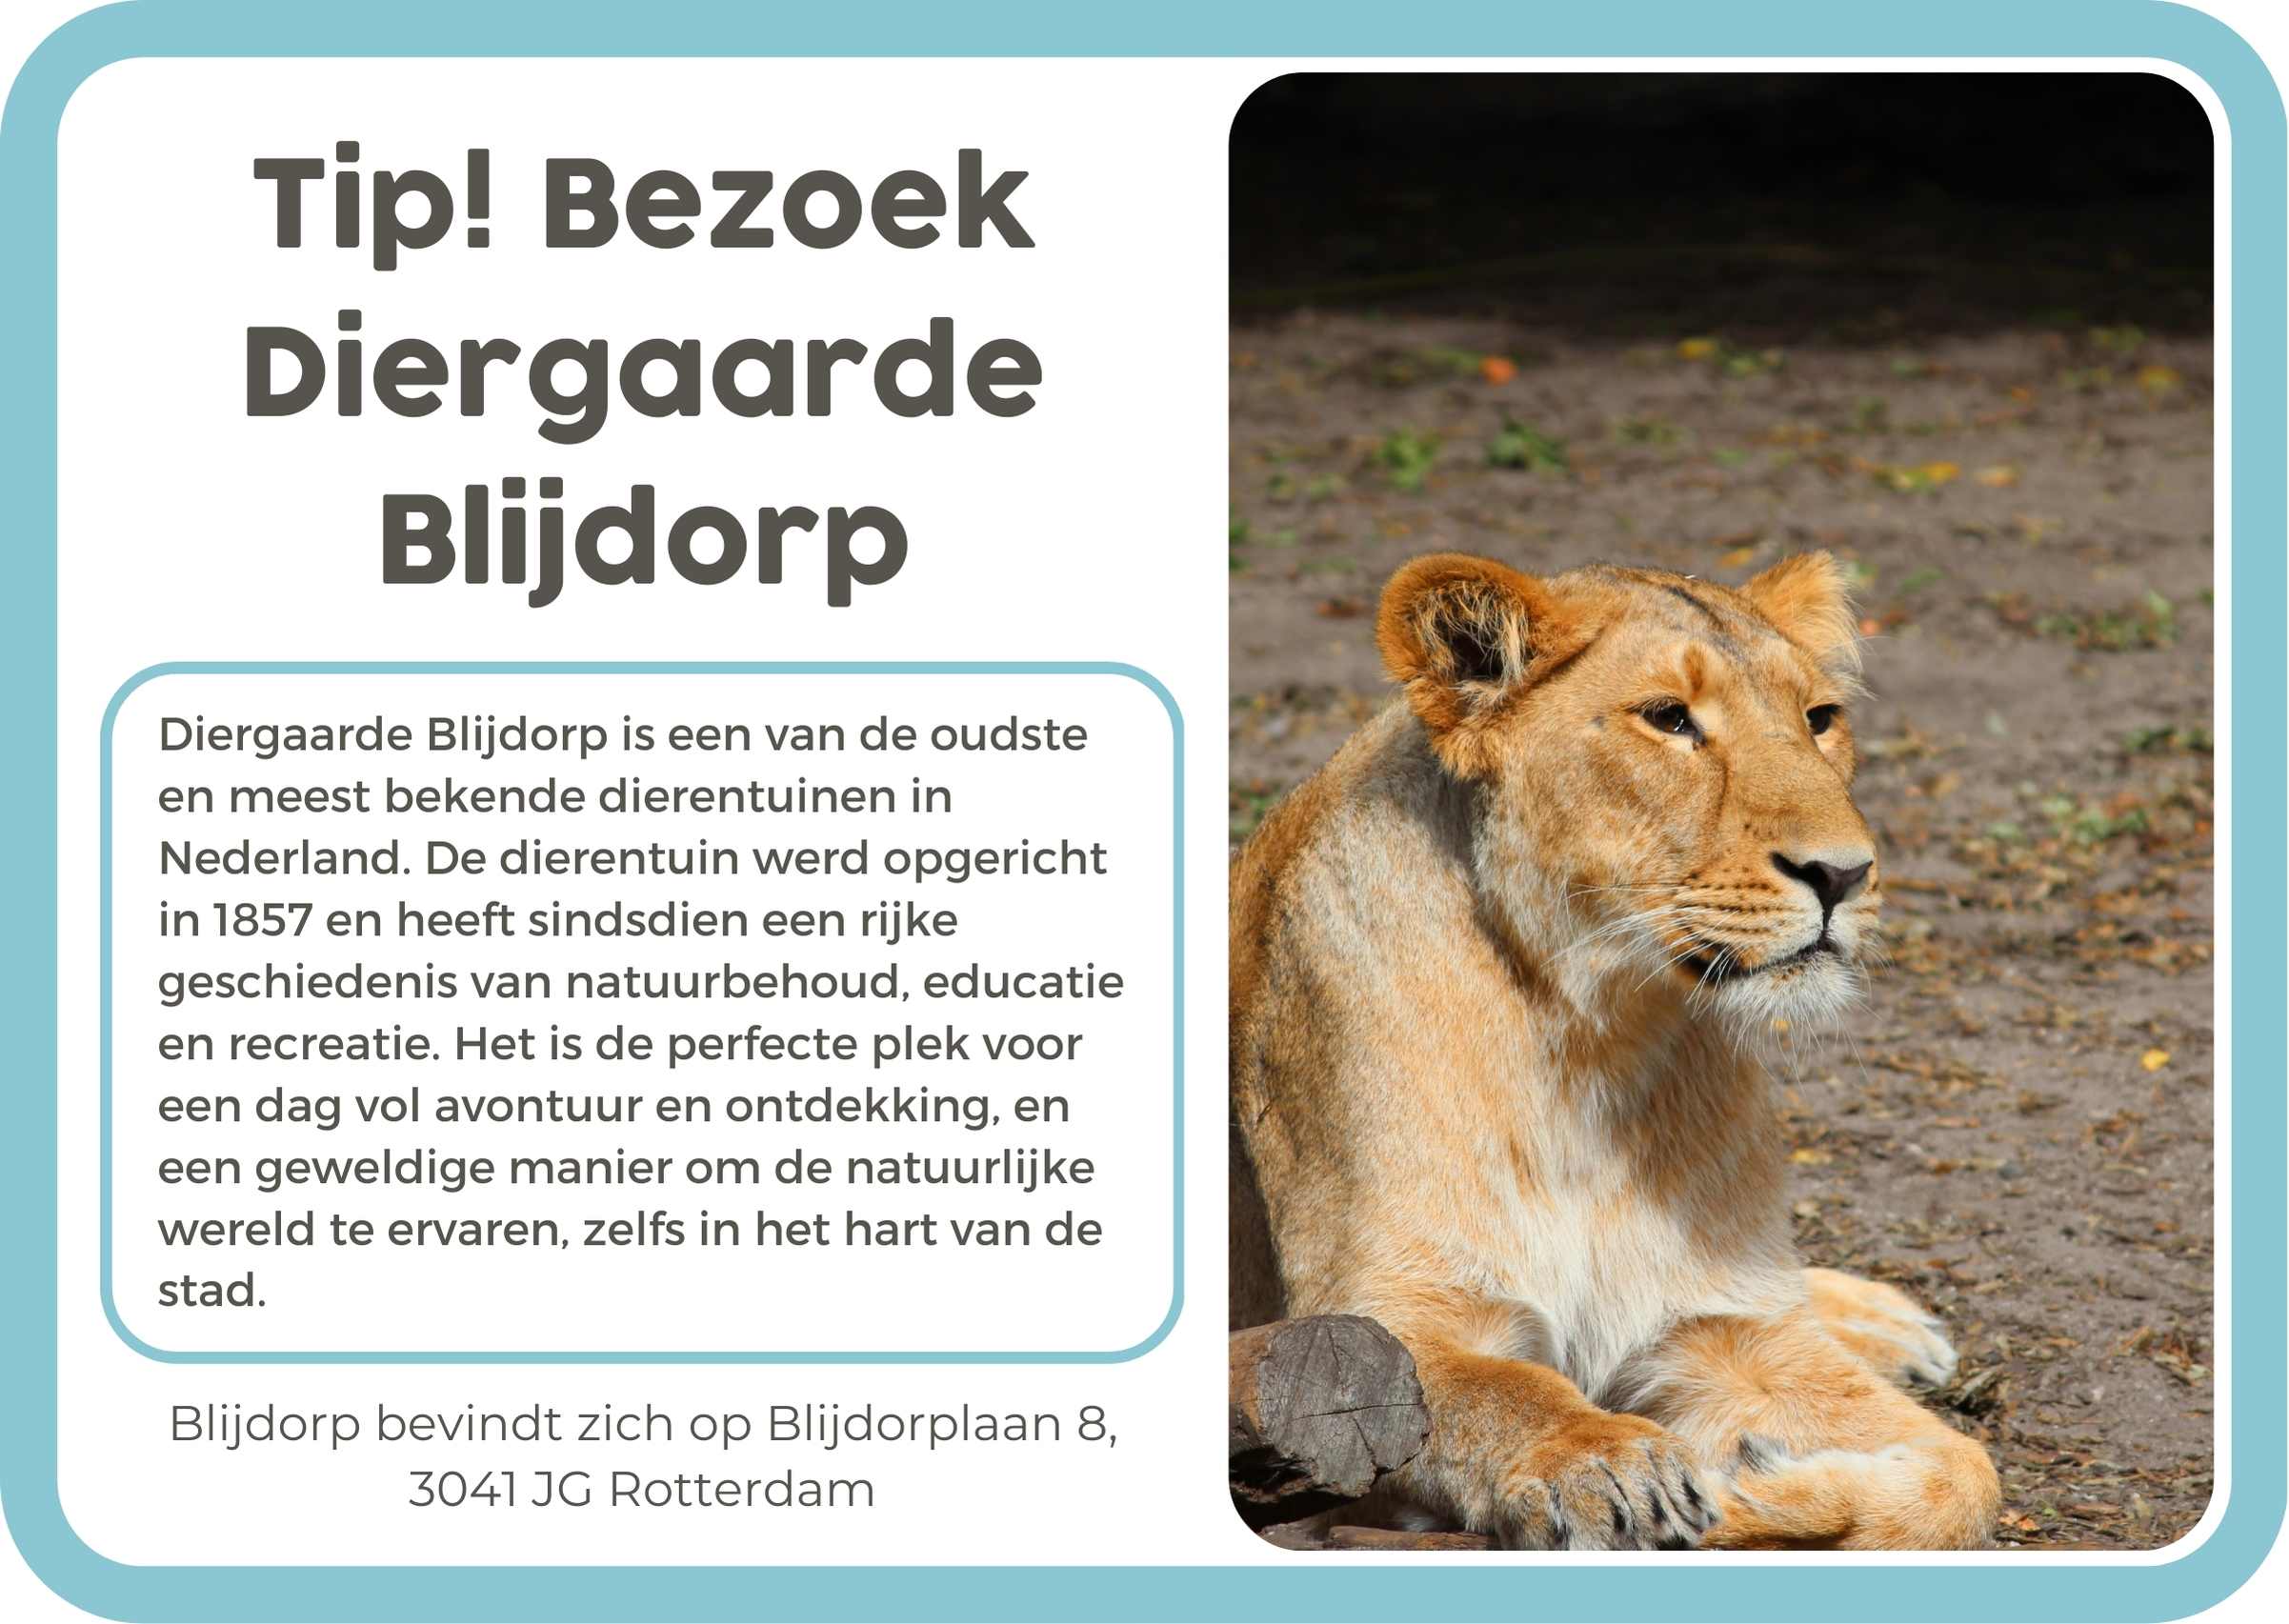 11. Rotterdam Zoo Blijdorp